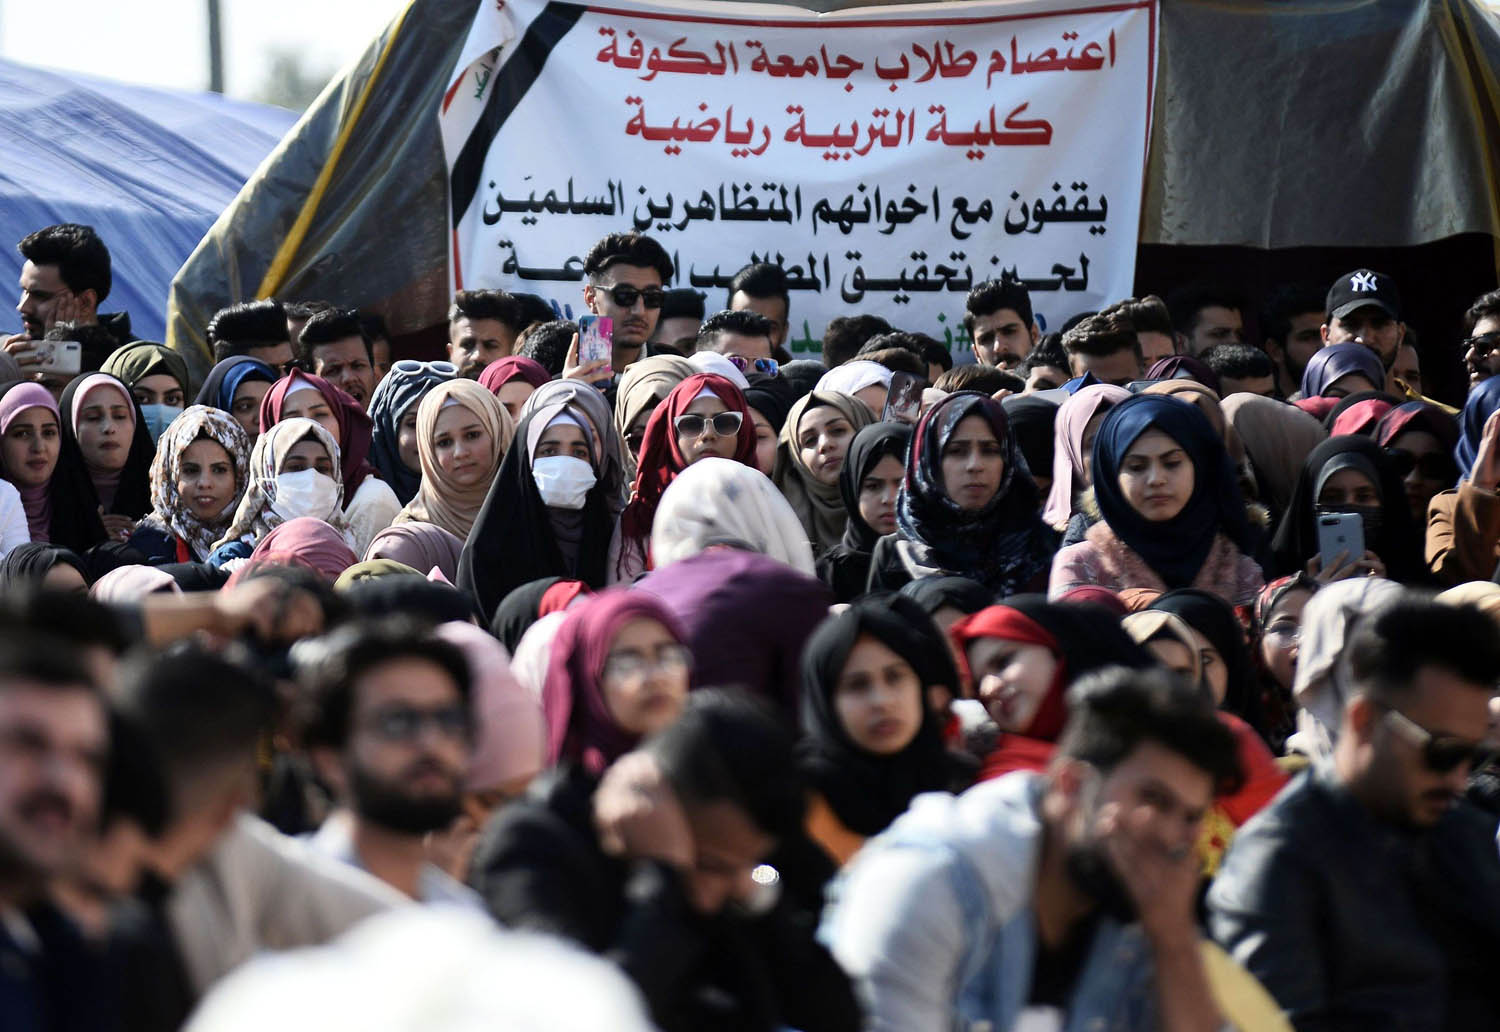 طلبة وطالبات من جامعة الكوفة يشاركون في الاحتجاجات ضد الحكومة